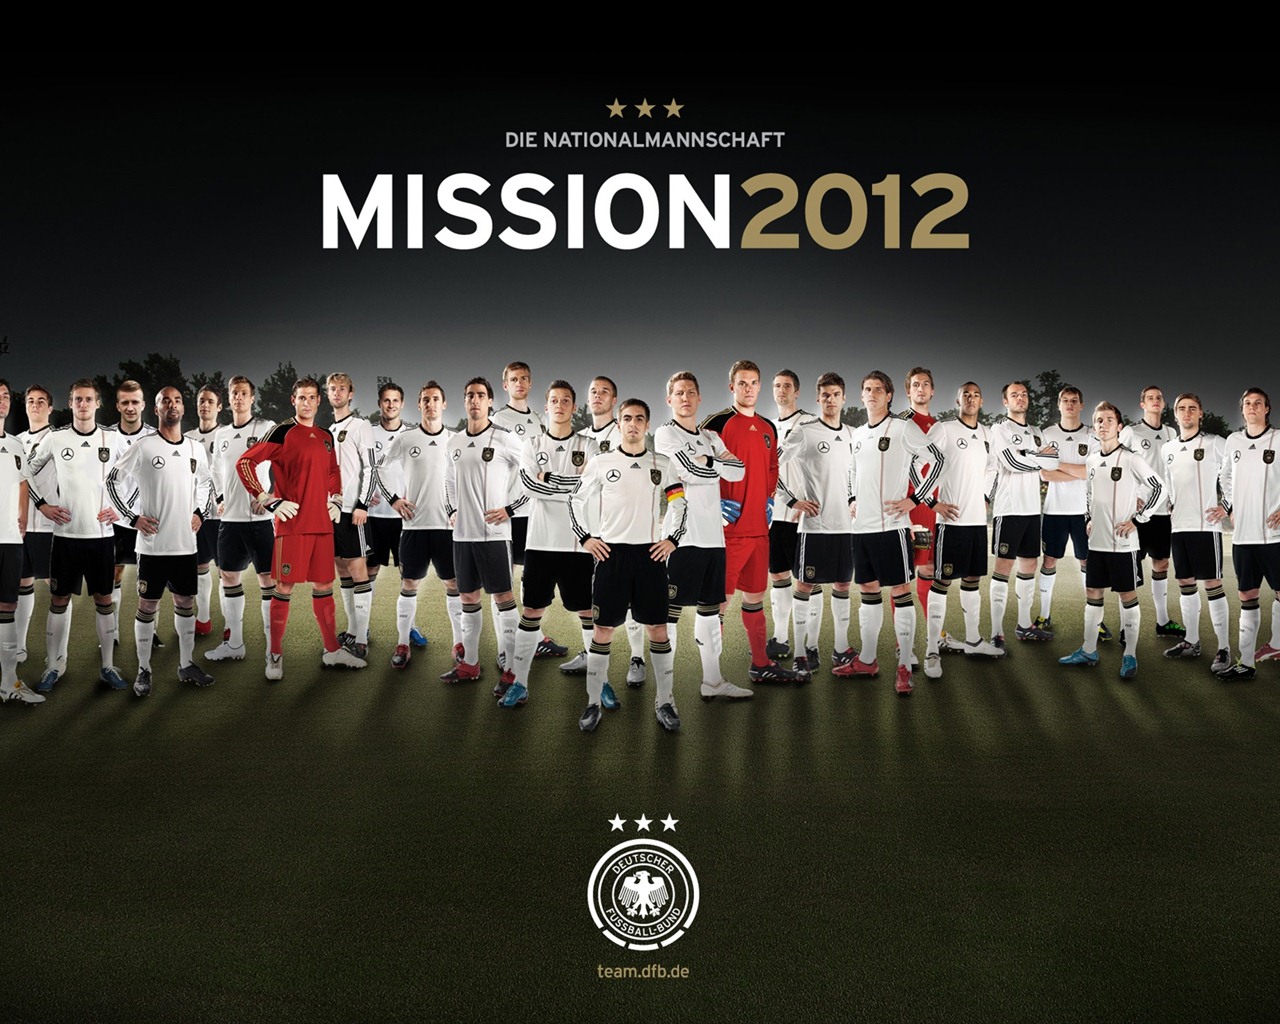 UEFA EURO 2012 欧洲足球锦标赛 高清壁纸(二)5 - 1280x1024